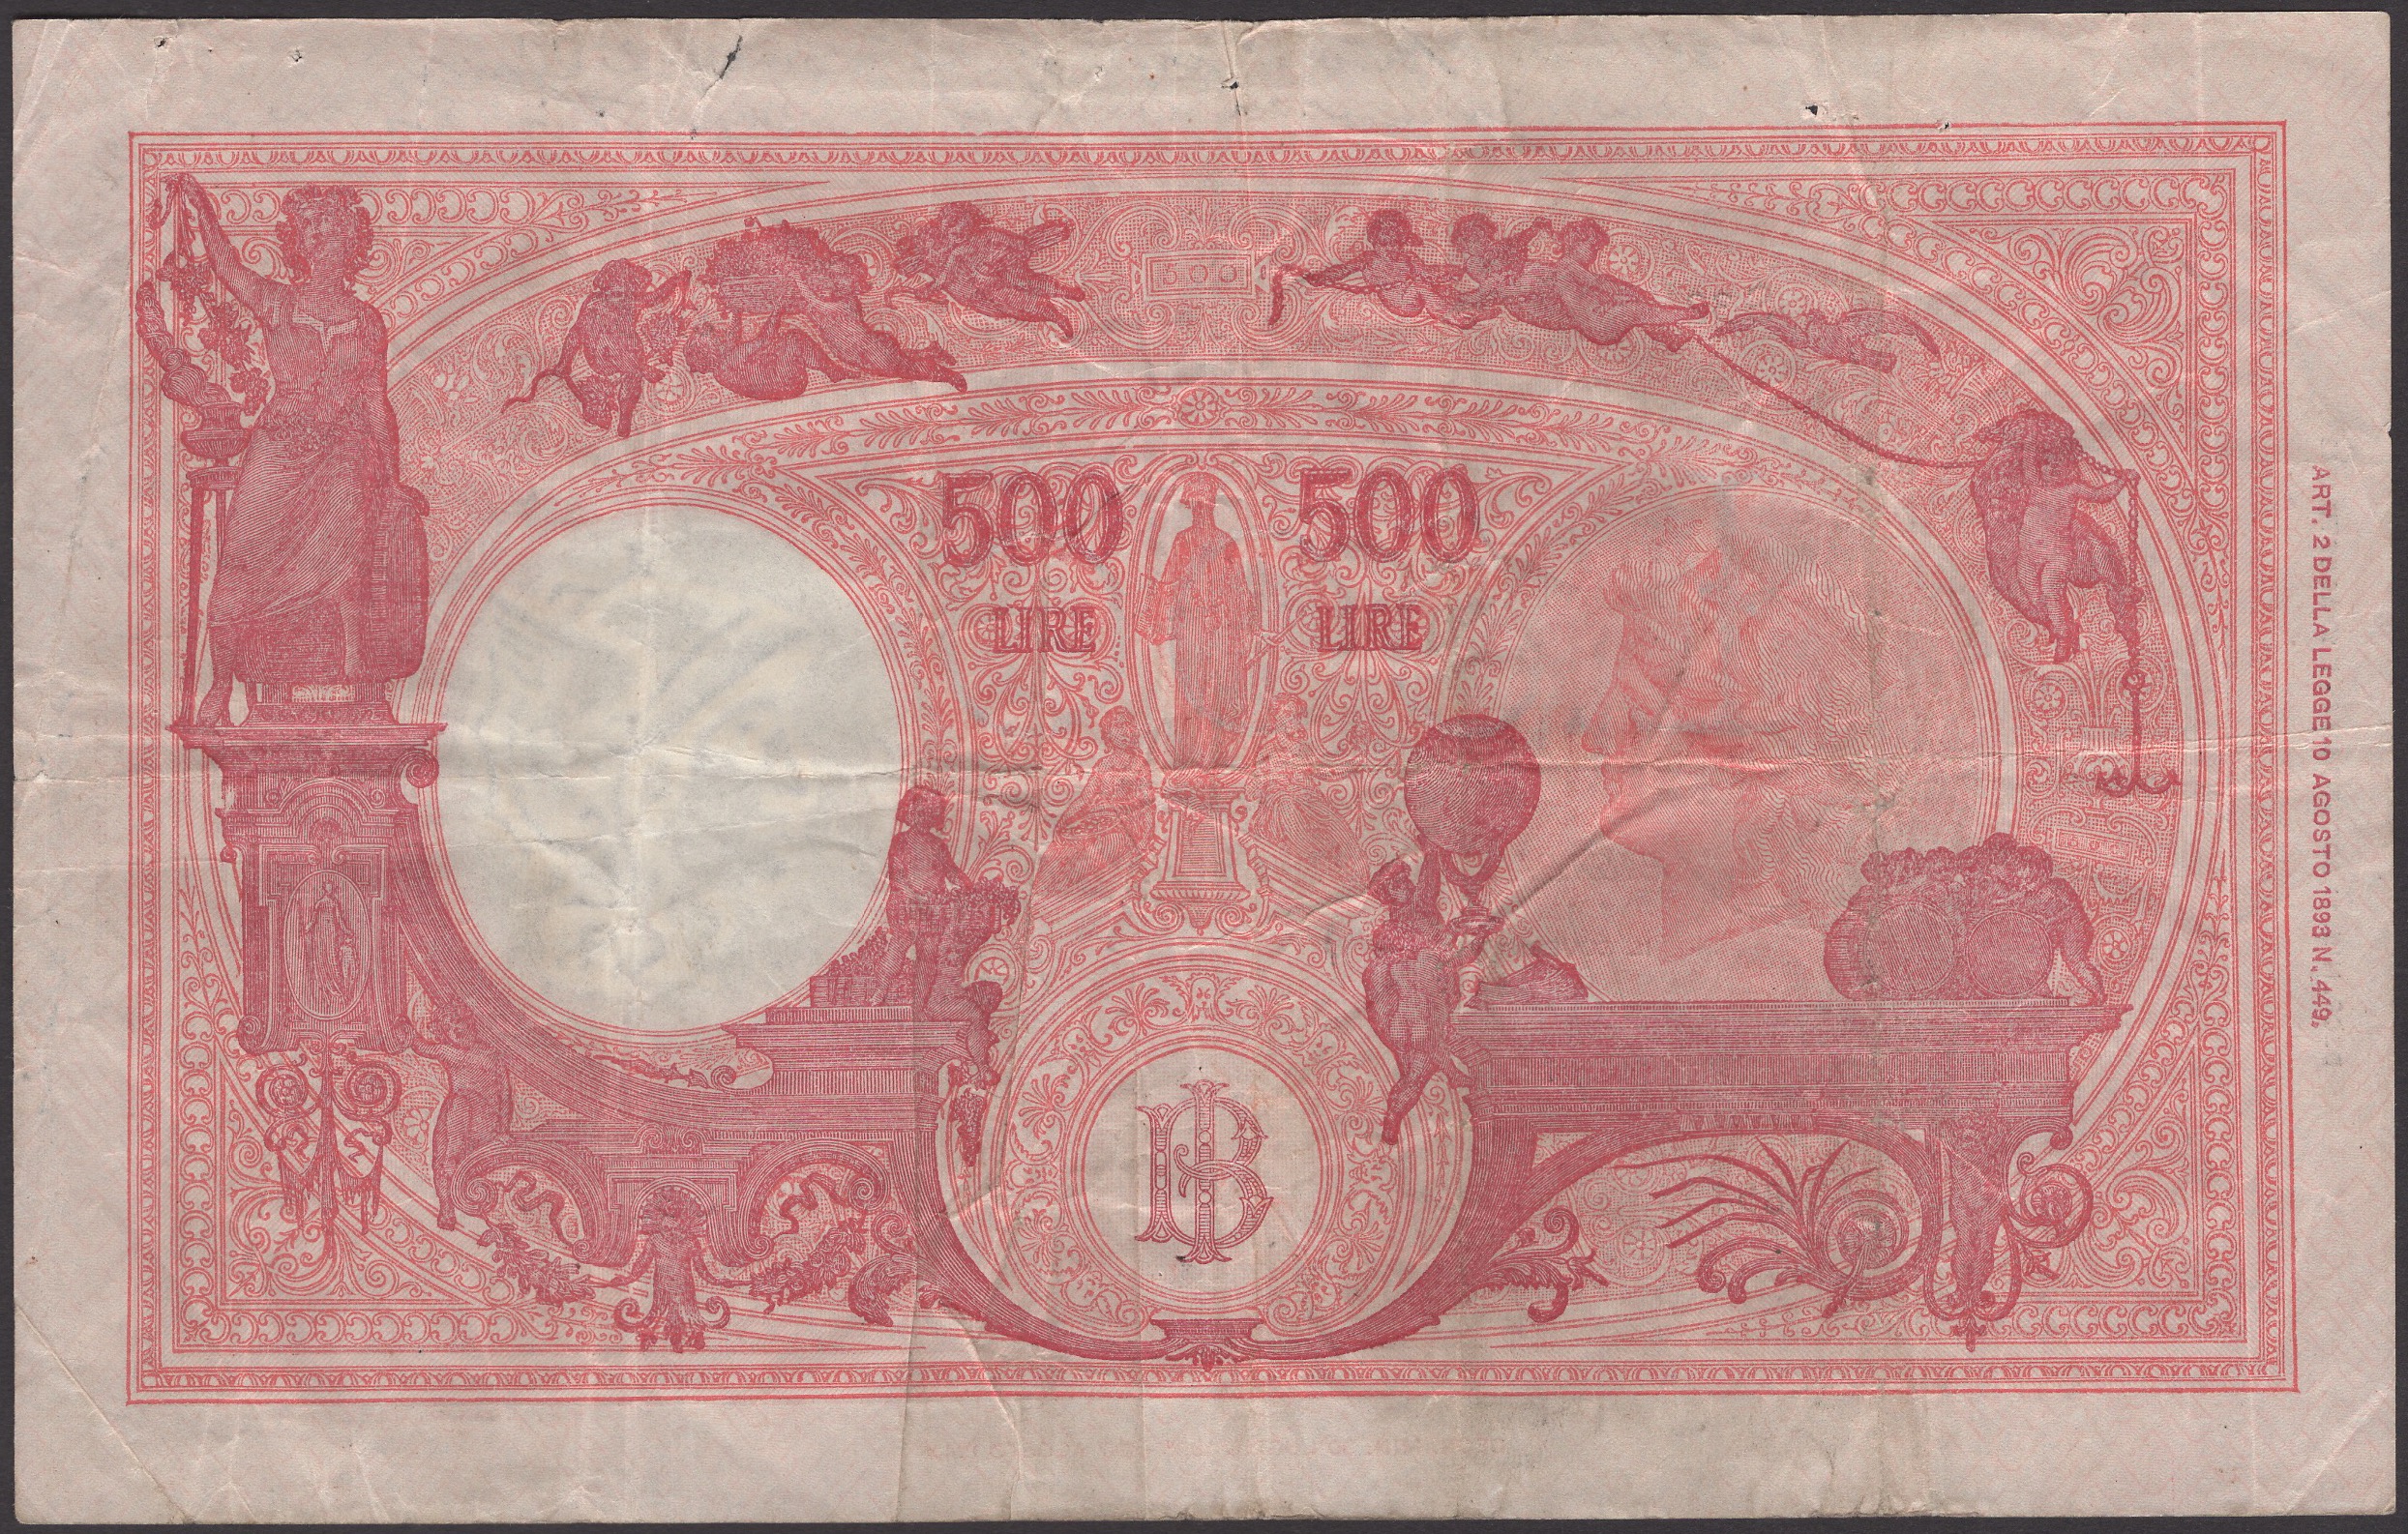 Banca d'Italia, 500 Lire, 1 August 1944, serial number S32 085154, Azzolini and Urbini... - Bild 2 aus 2